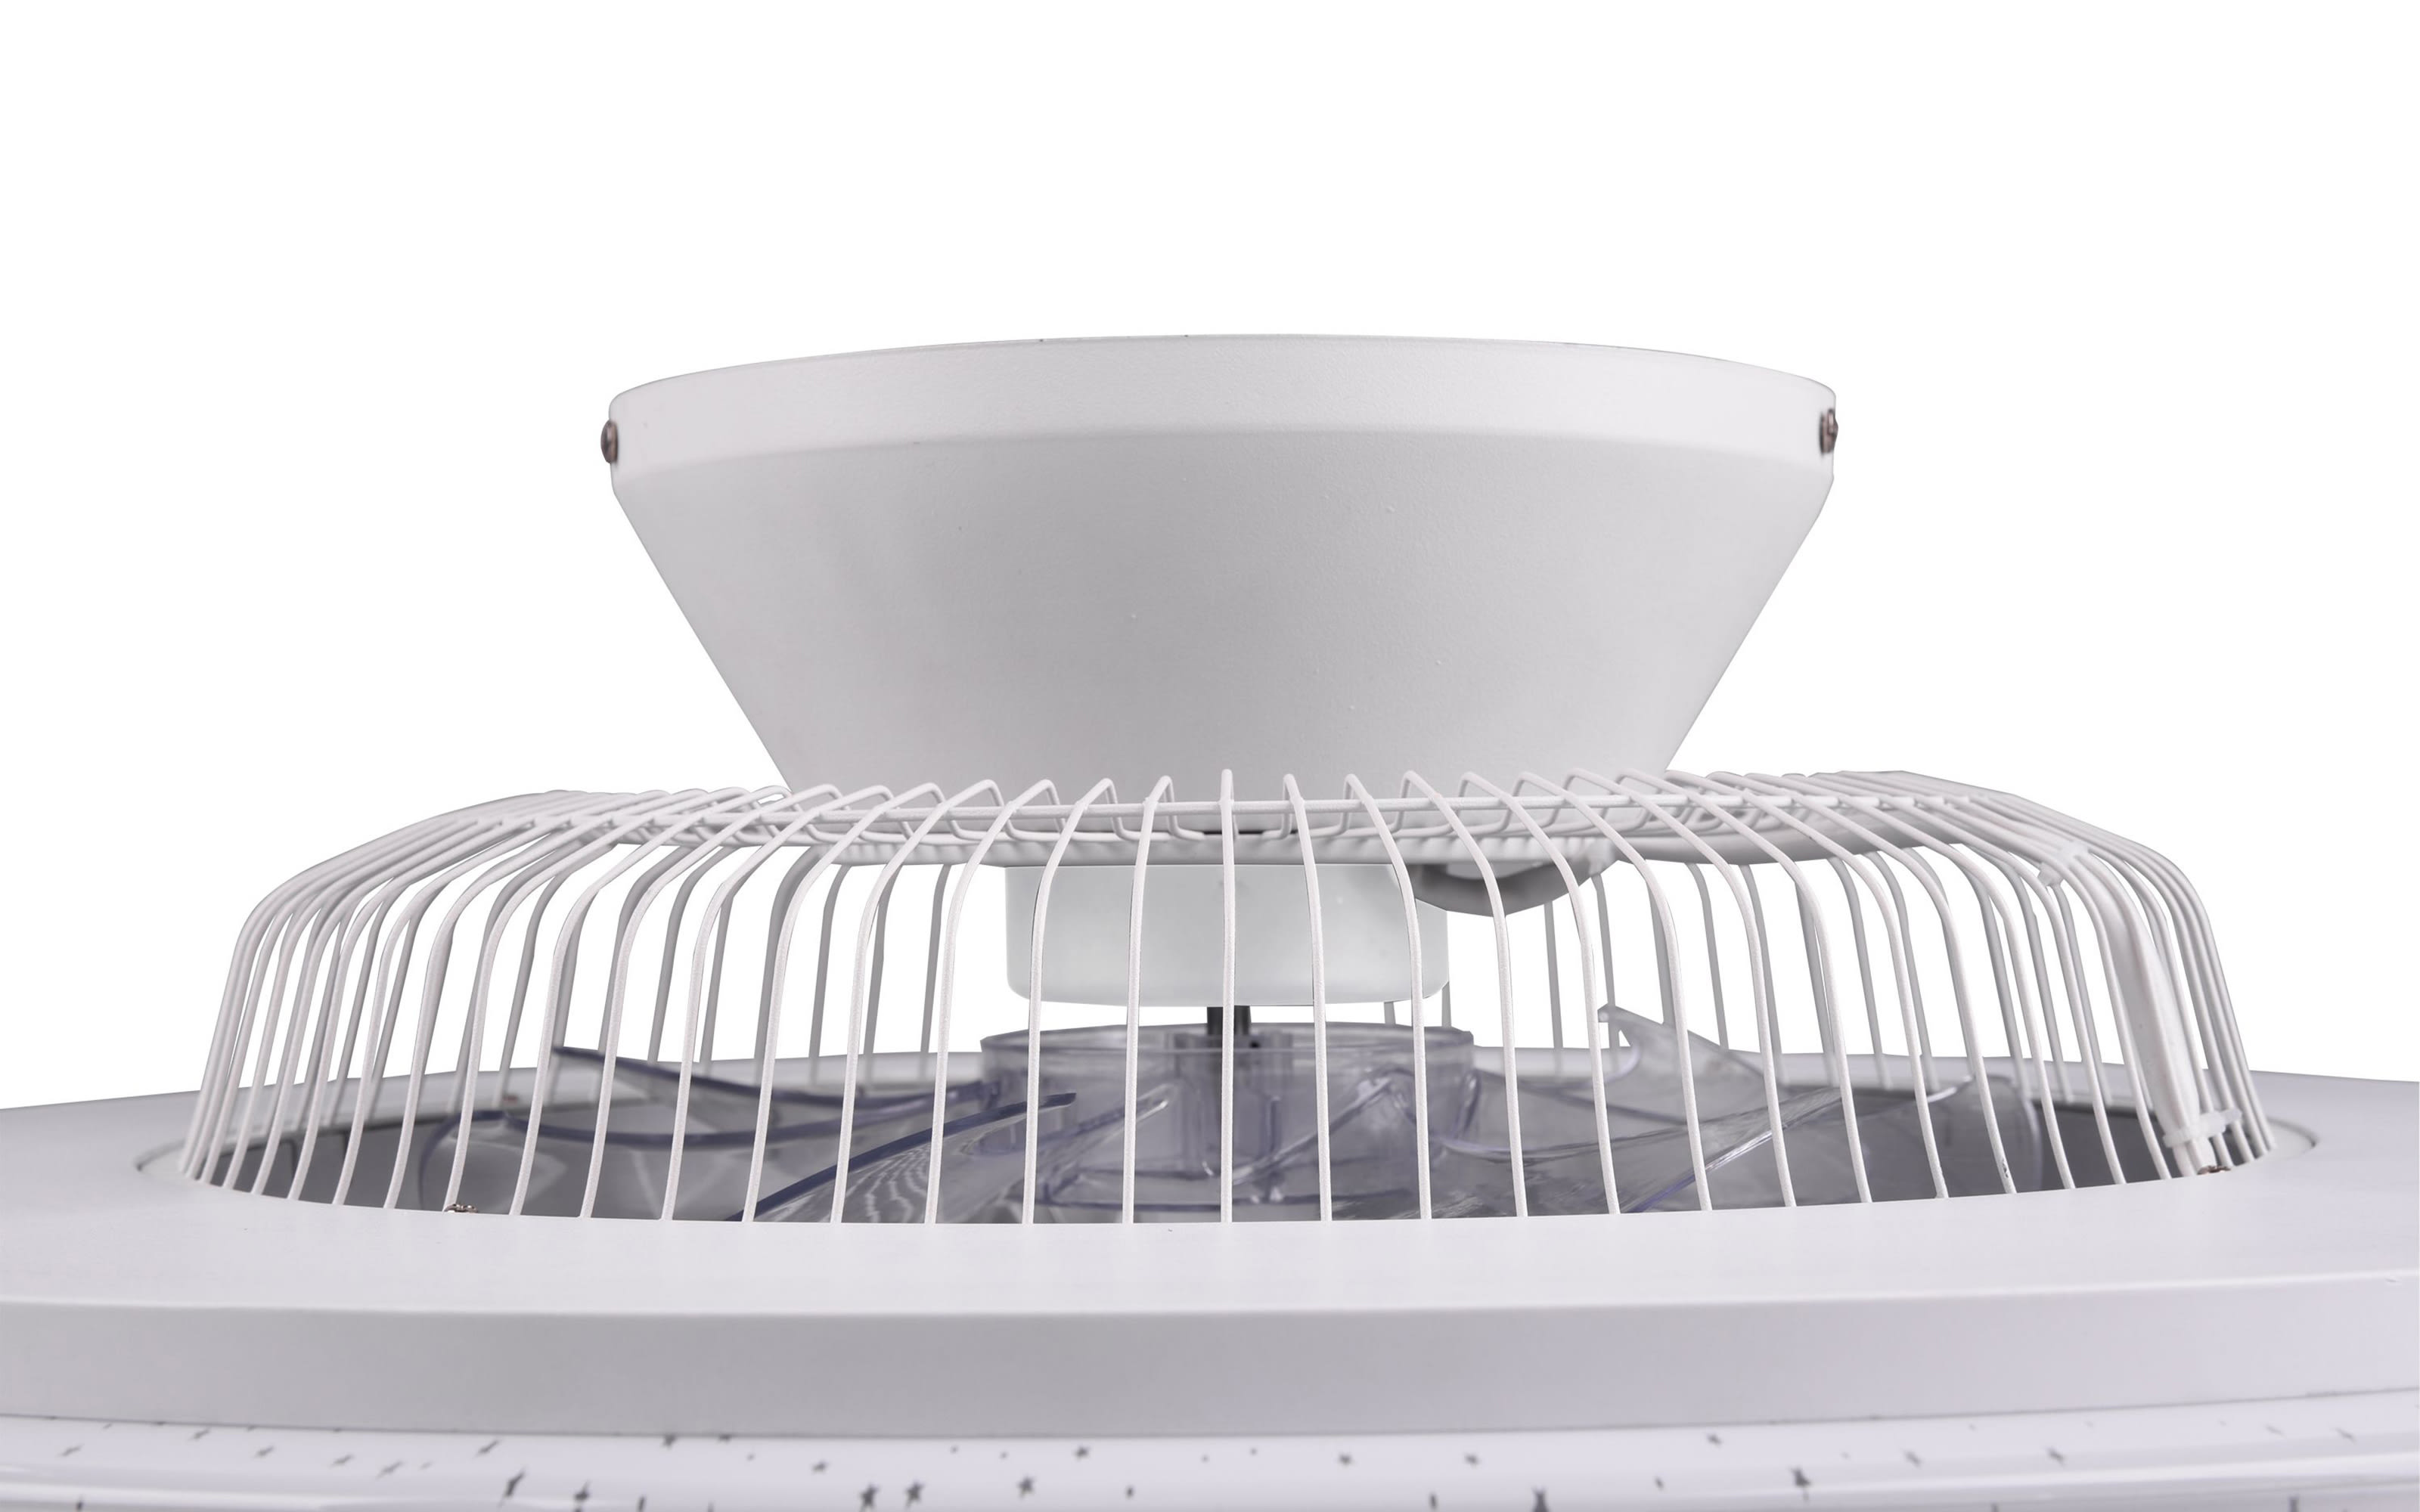 LED-Deckenleuchte/Ventilator Mekka CCT in weiß, 59,5 cm